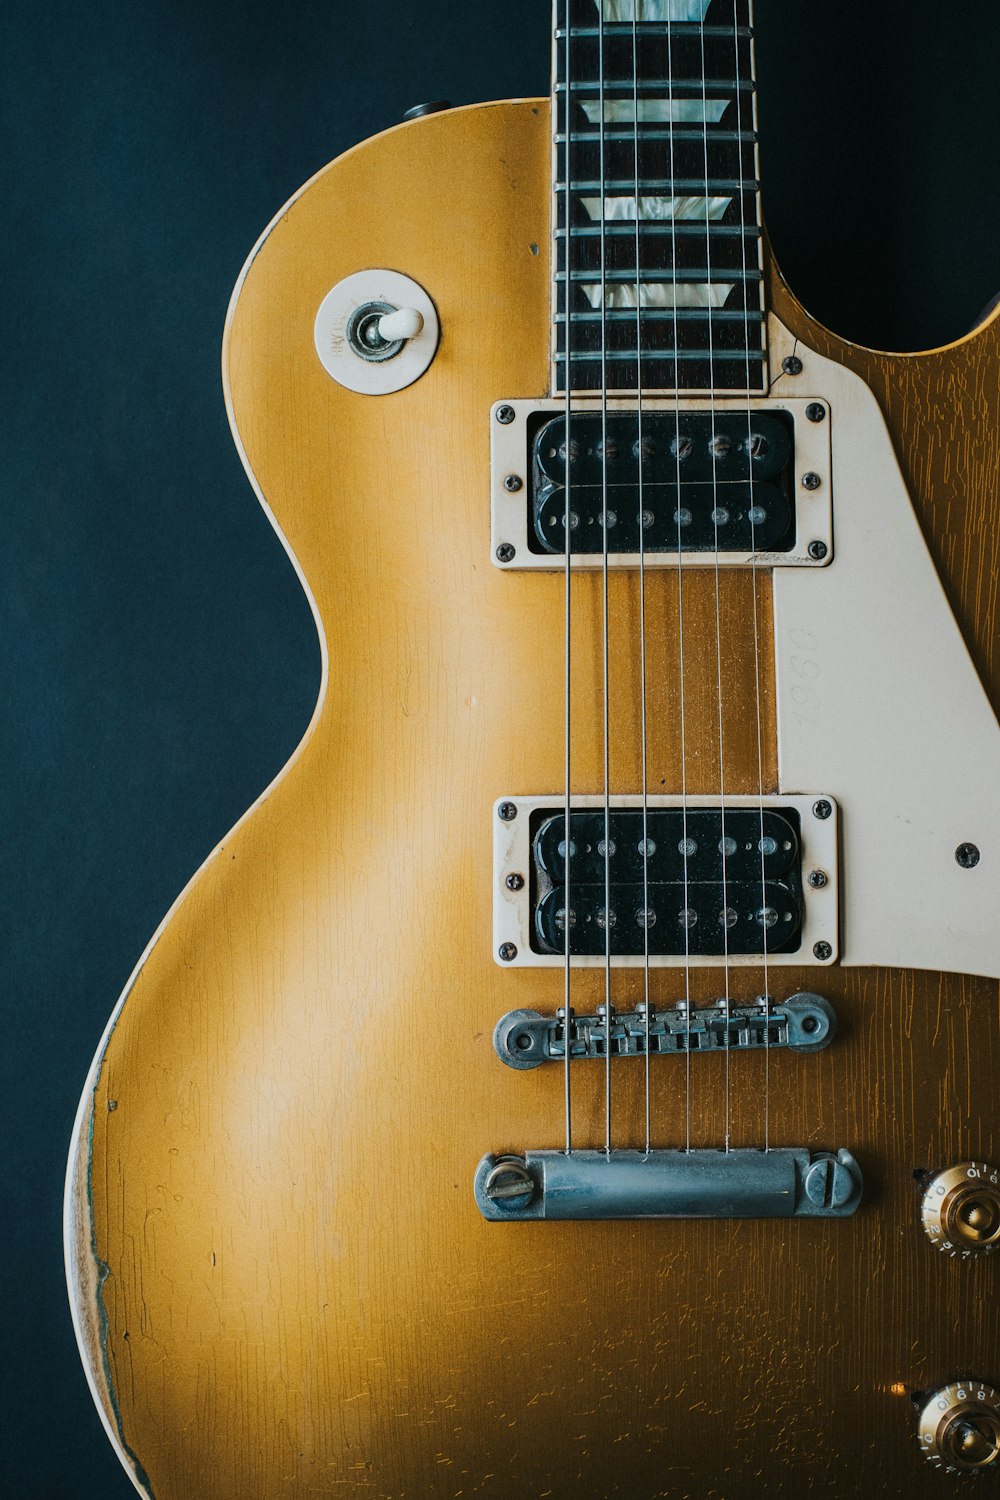 closeup photography of electric guitar